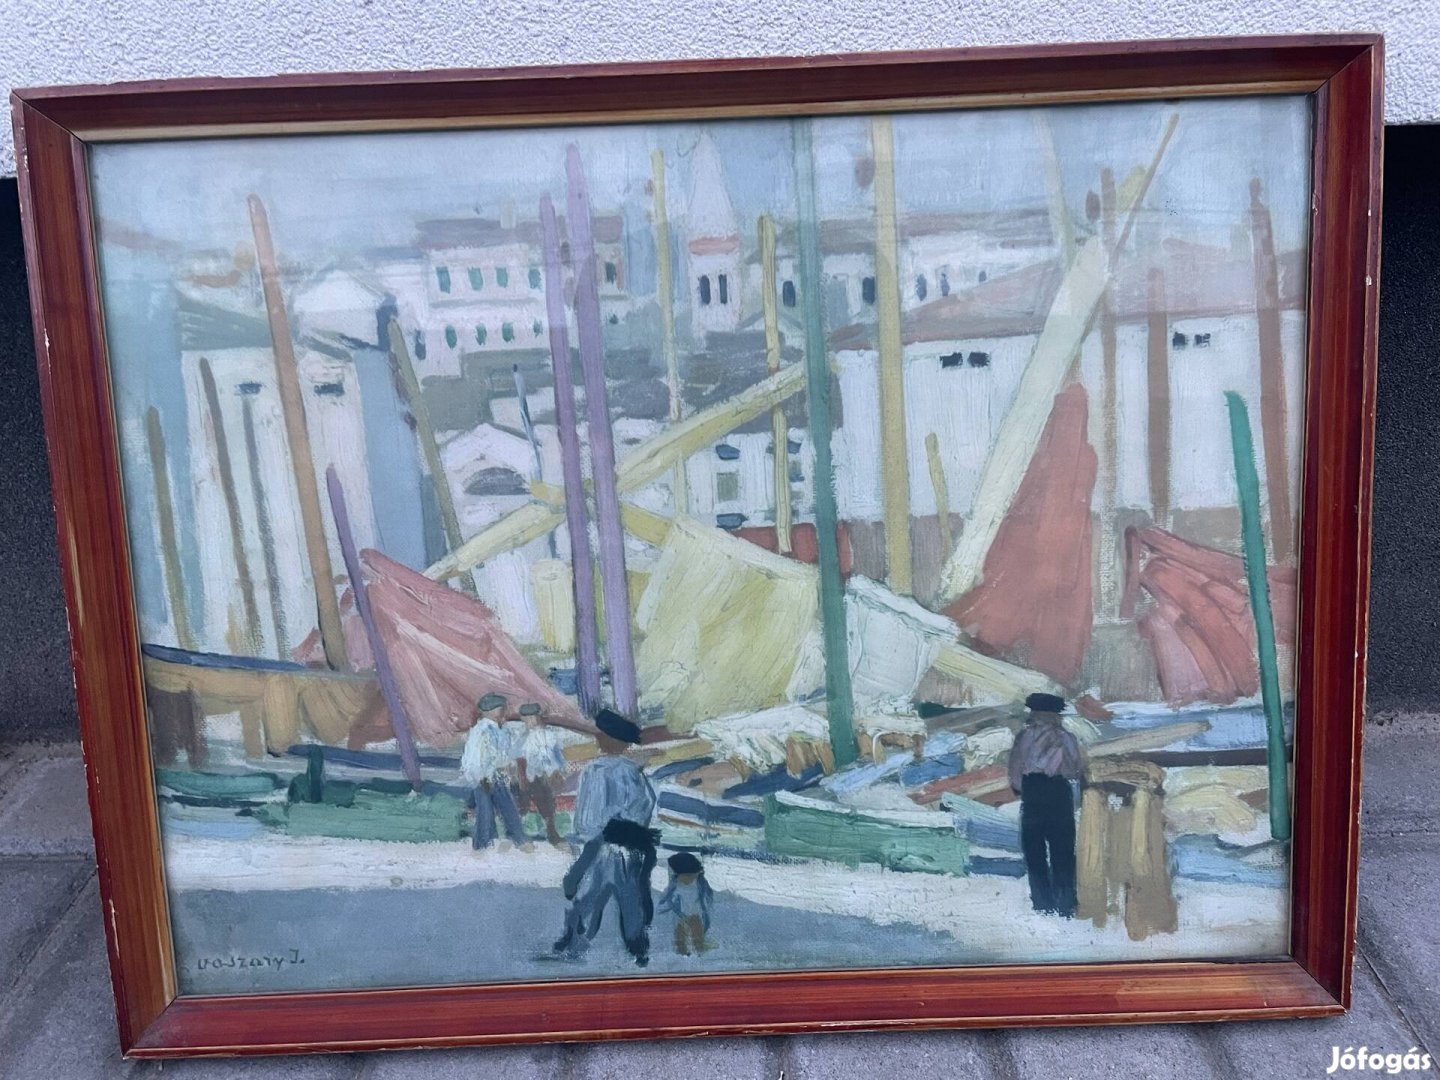 Vaszary János: Piranoi kikötő reprodukció kép, fa keretben 